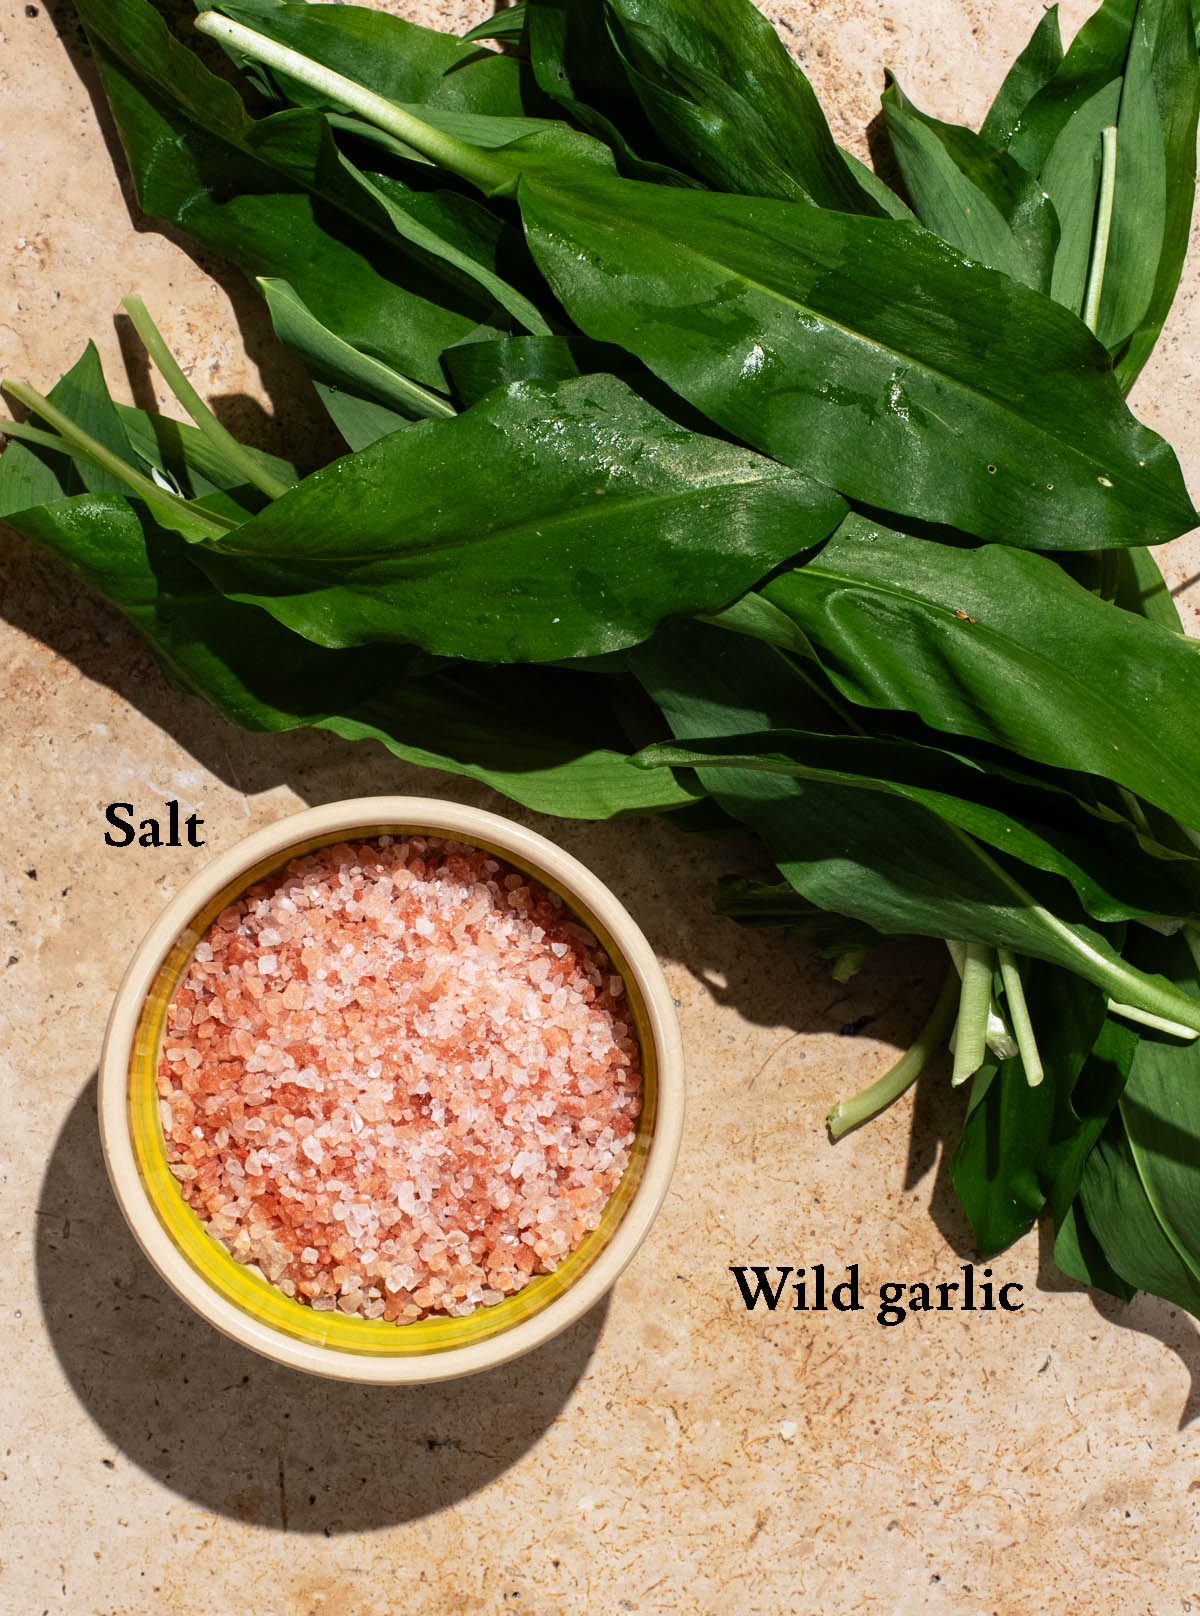 Wild garlic salt ingredients with labels.